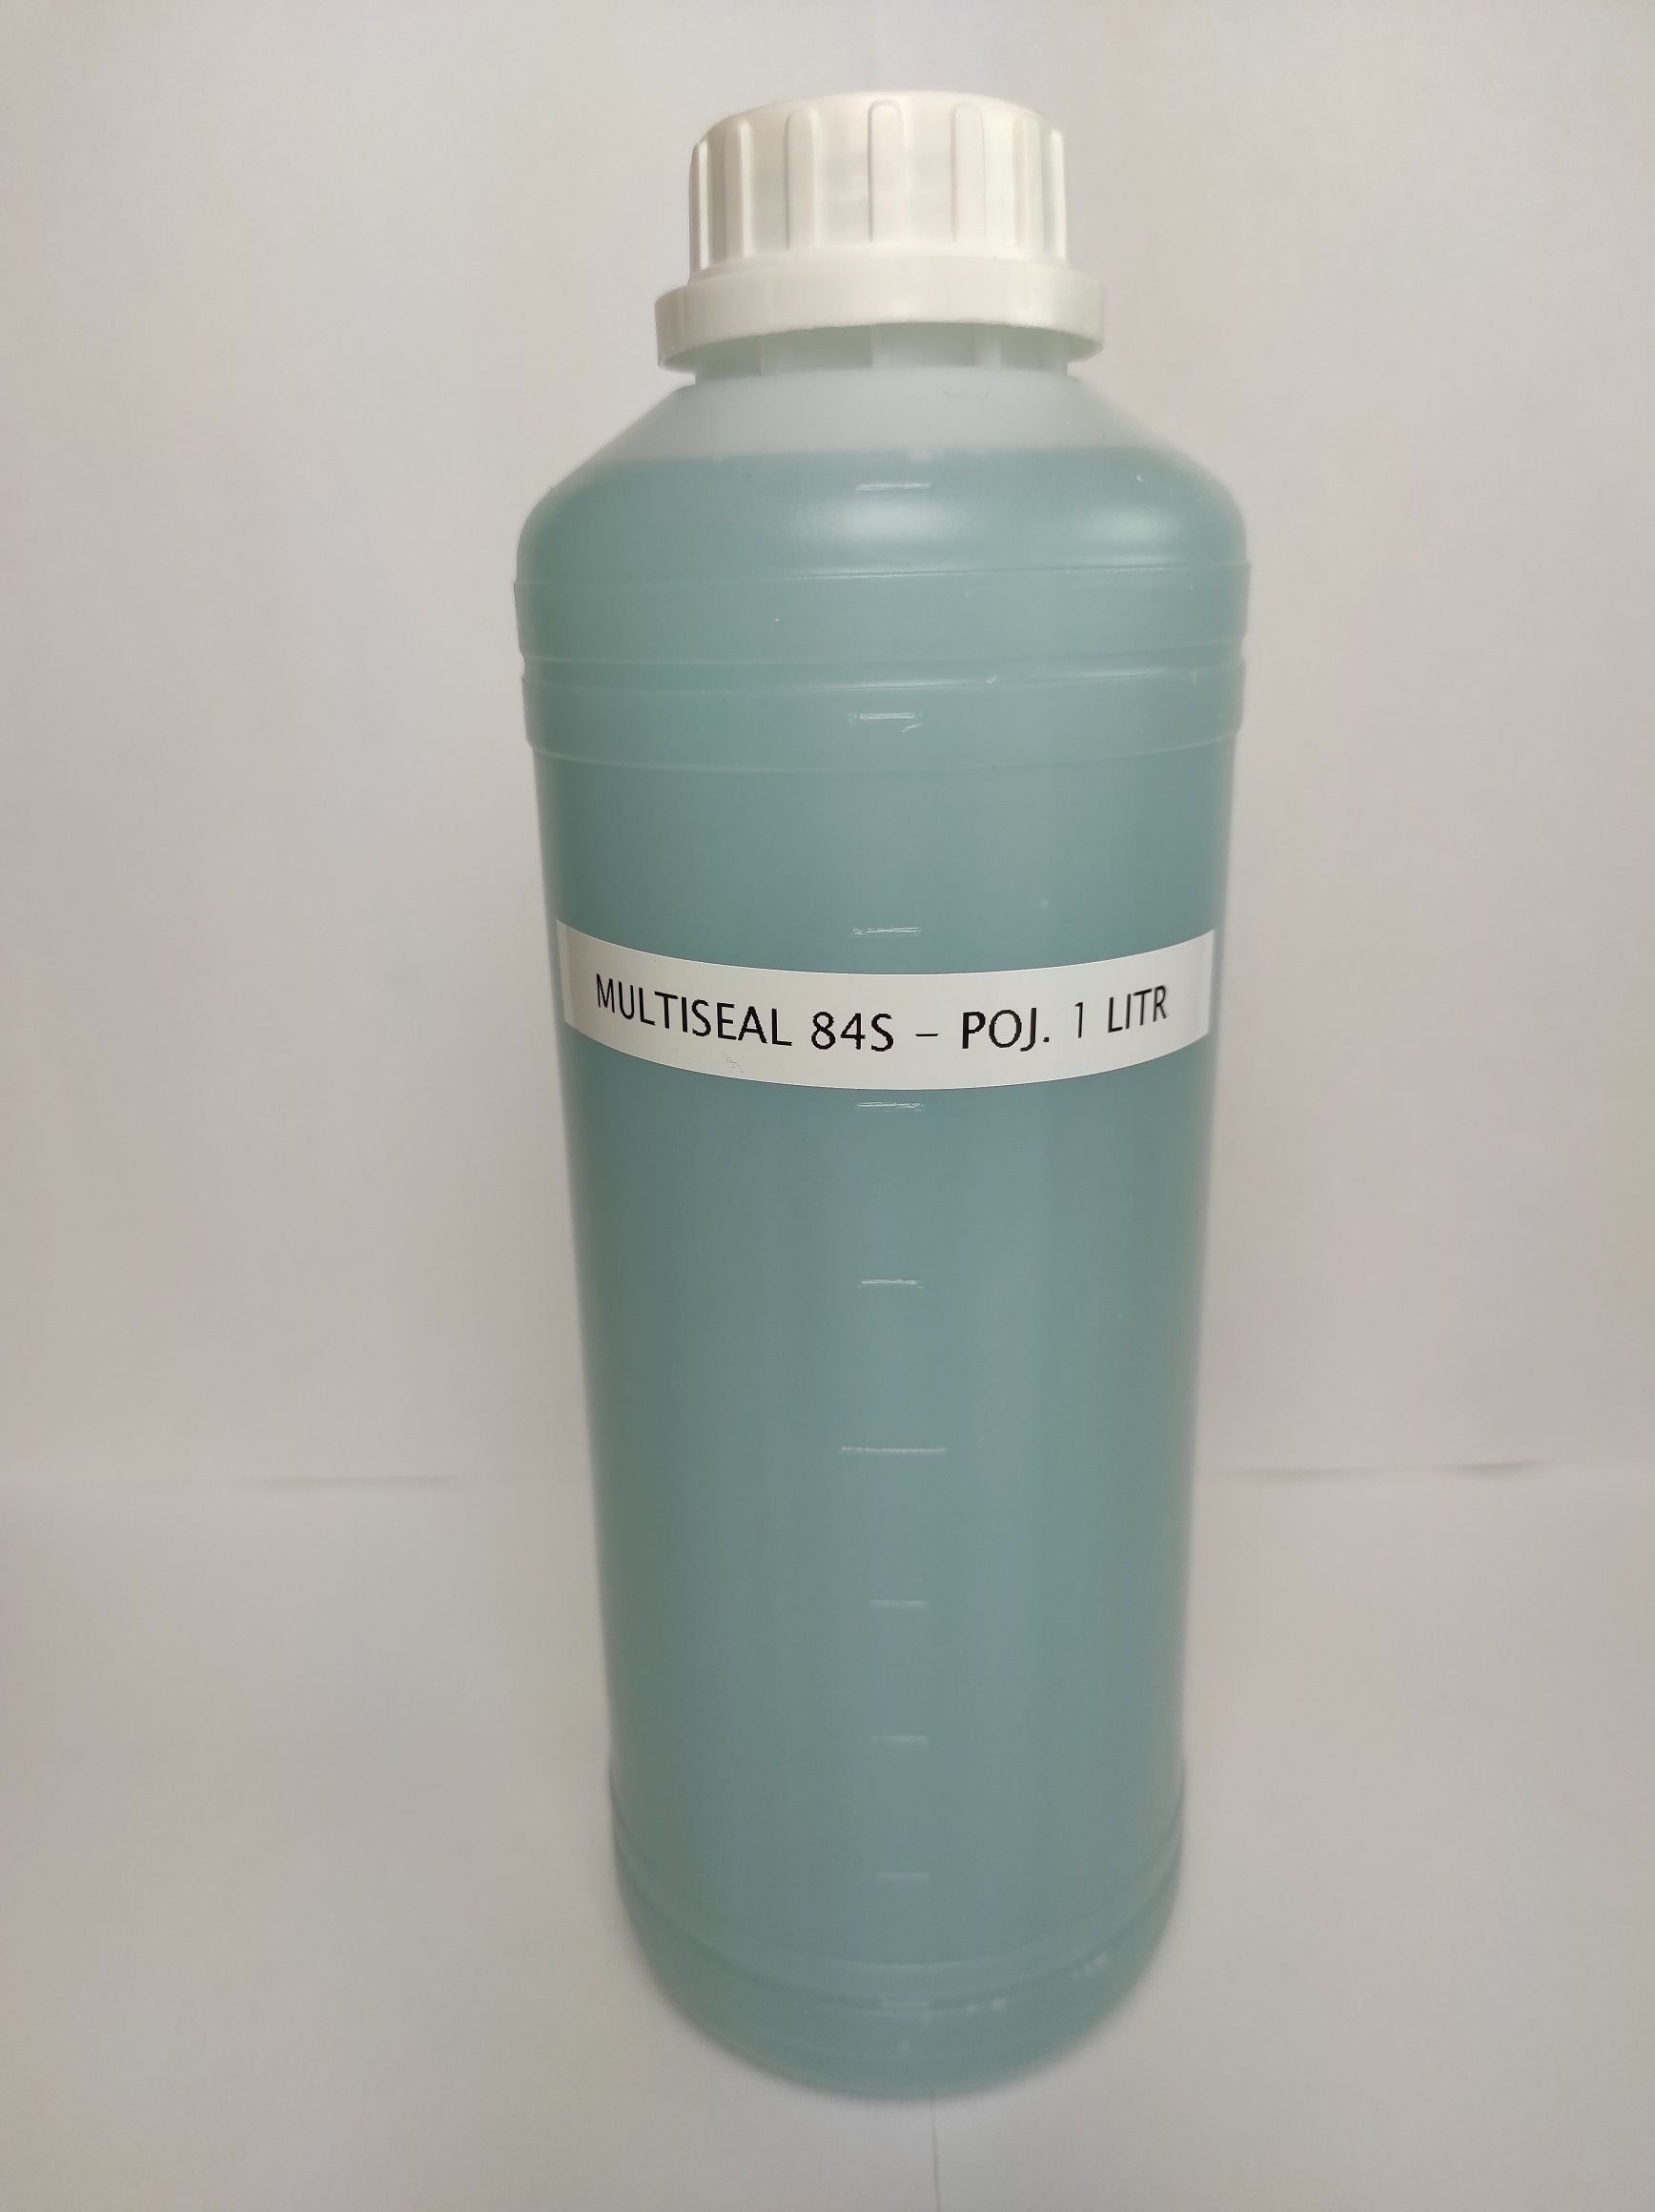 Mutliseal 84 S (nowa nazwa - WATER L) – pojemność  5 L